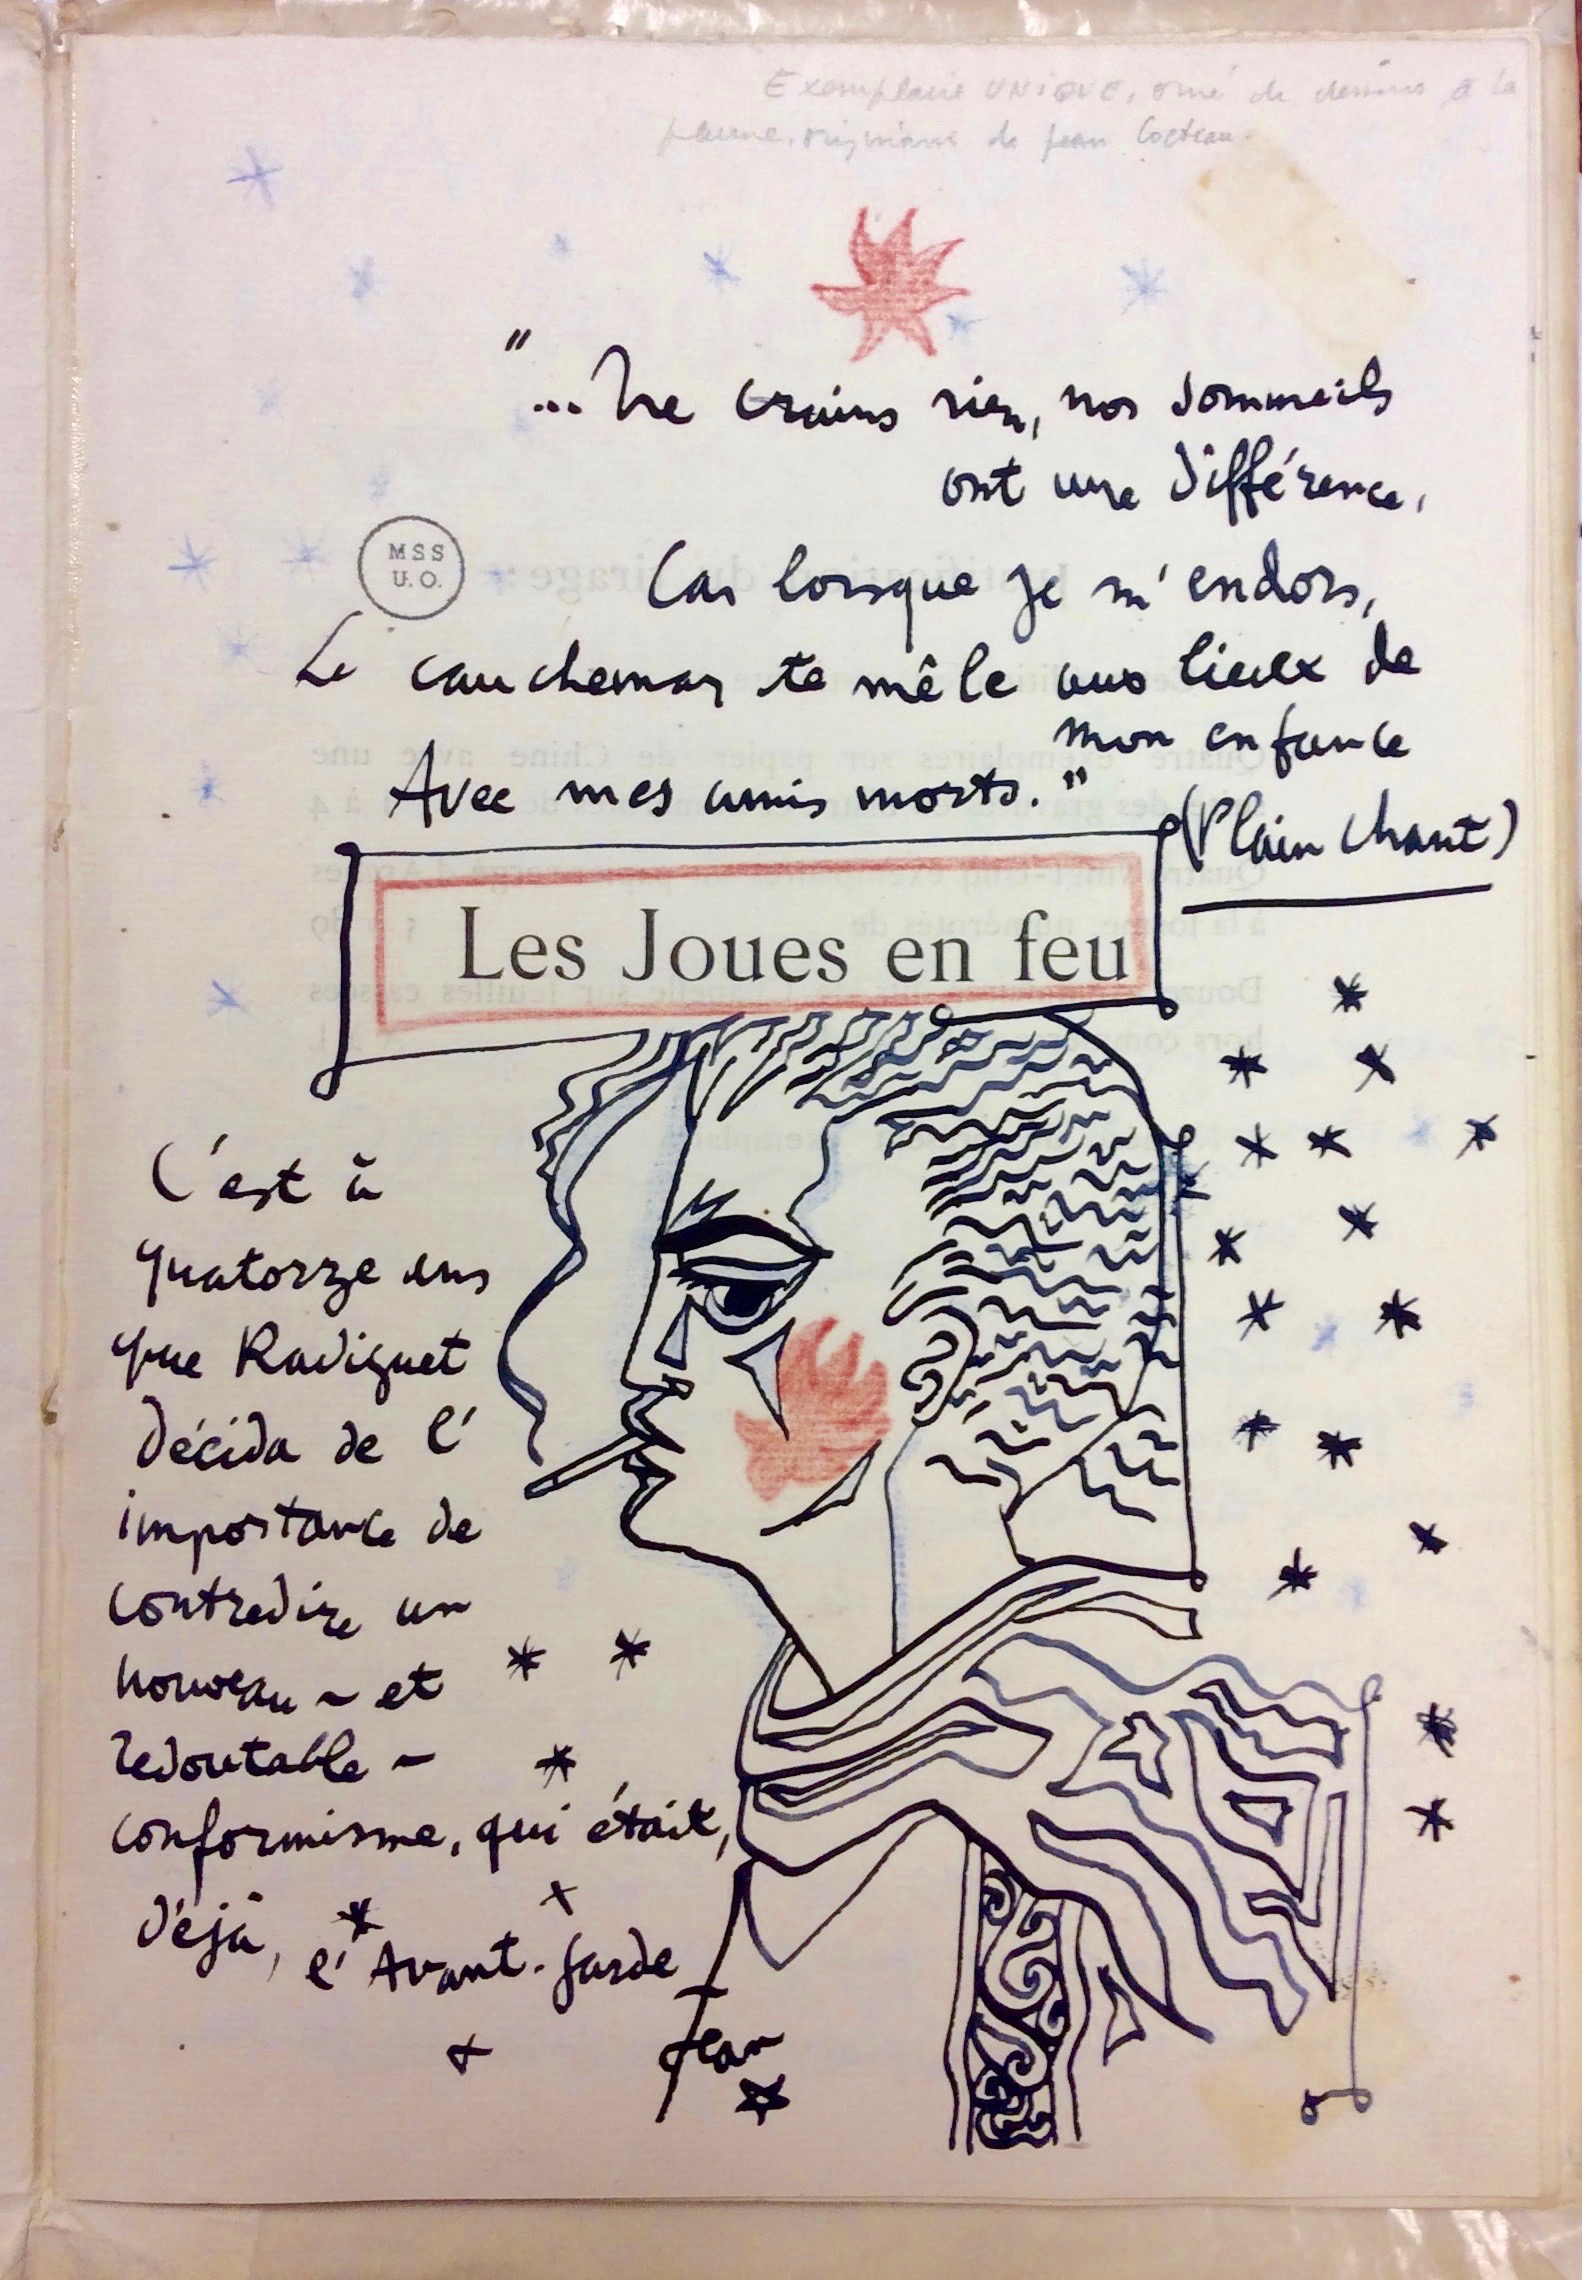 Les Joues en feu - Recueil de poèmes de Raymond Radiguet, Collection des manuscrits français, 30-005-S18-F3, ©Archives aet collections spéciales